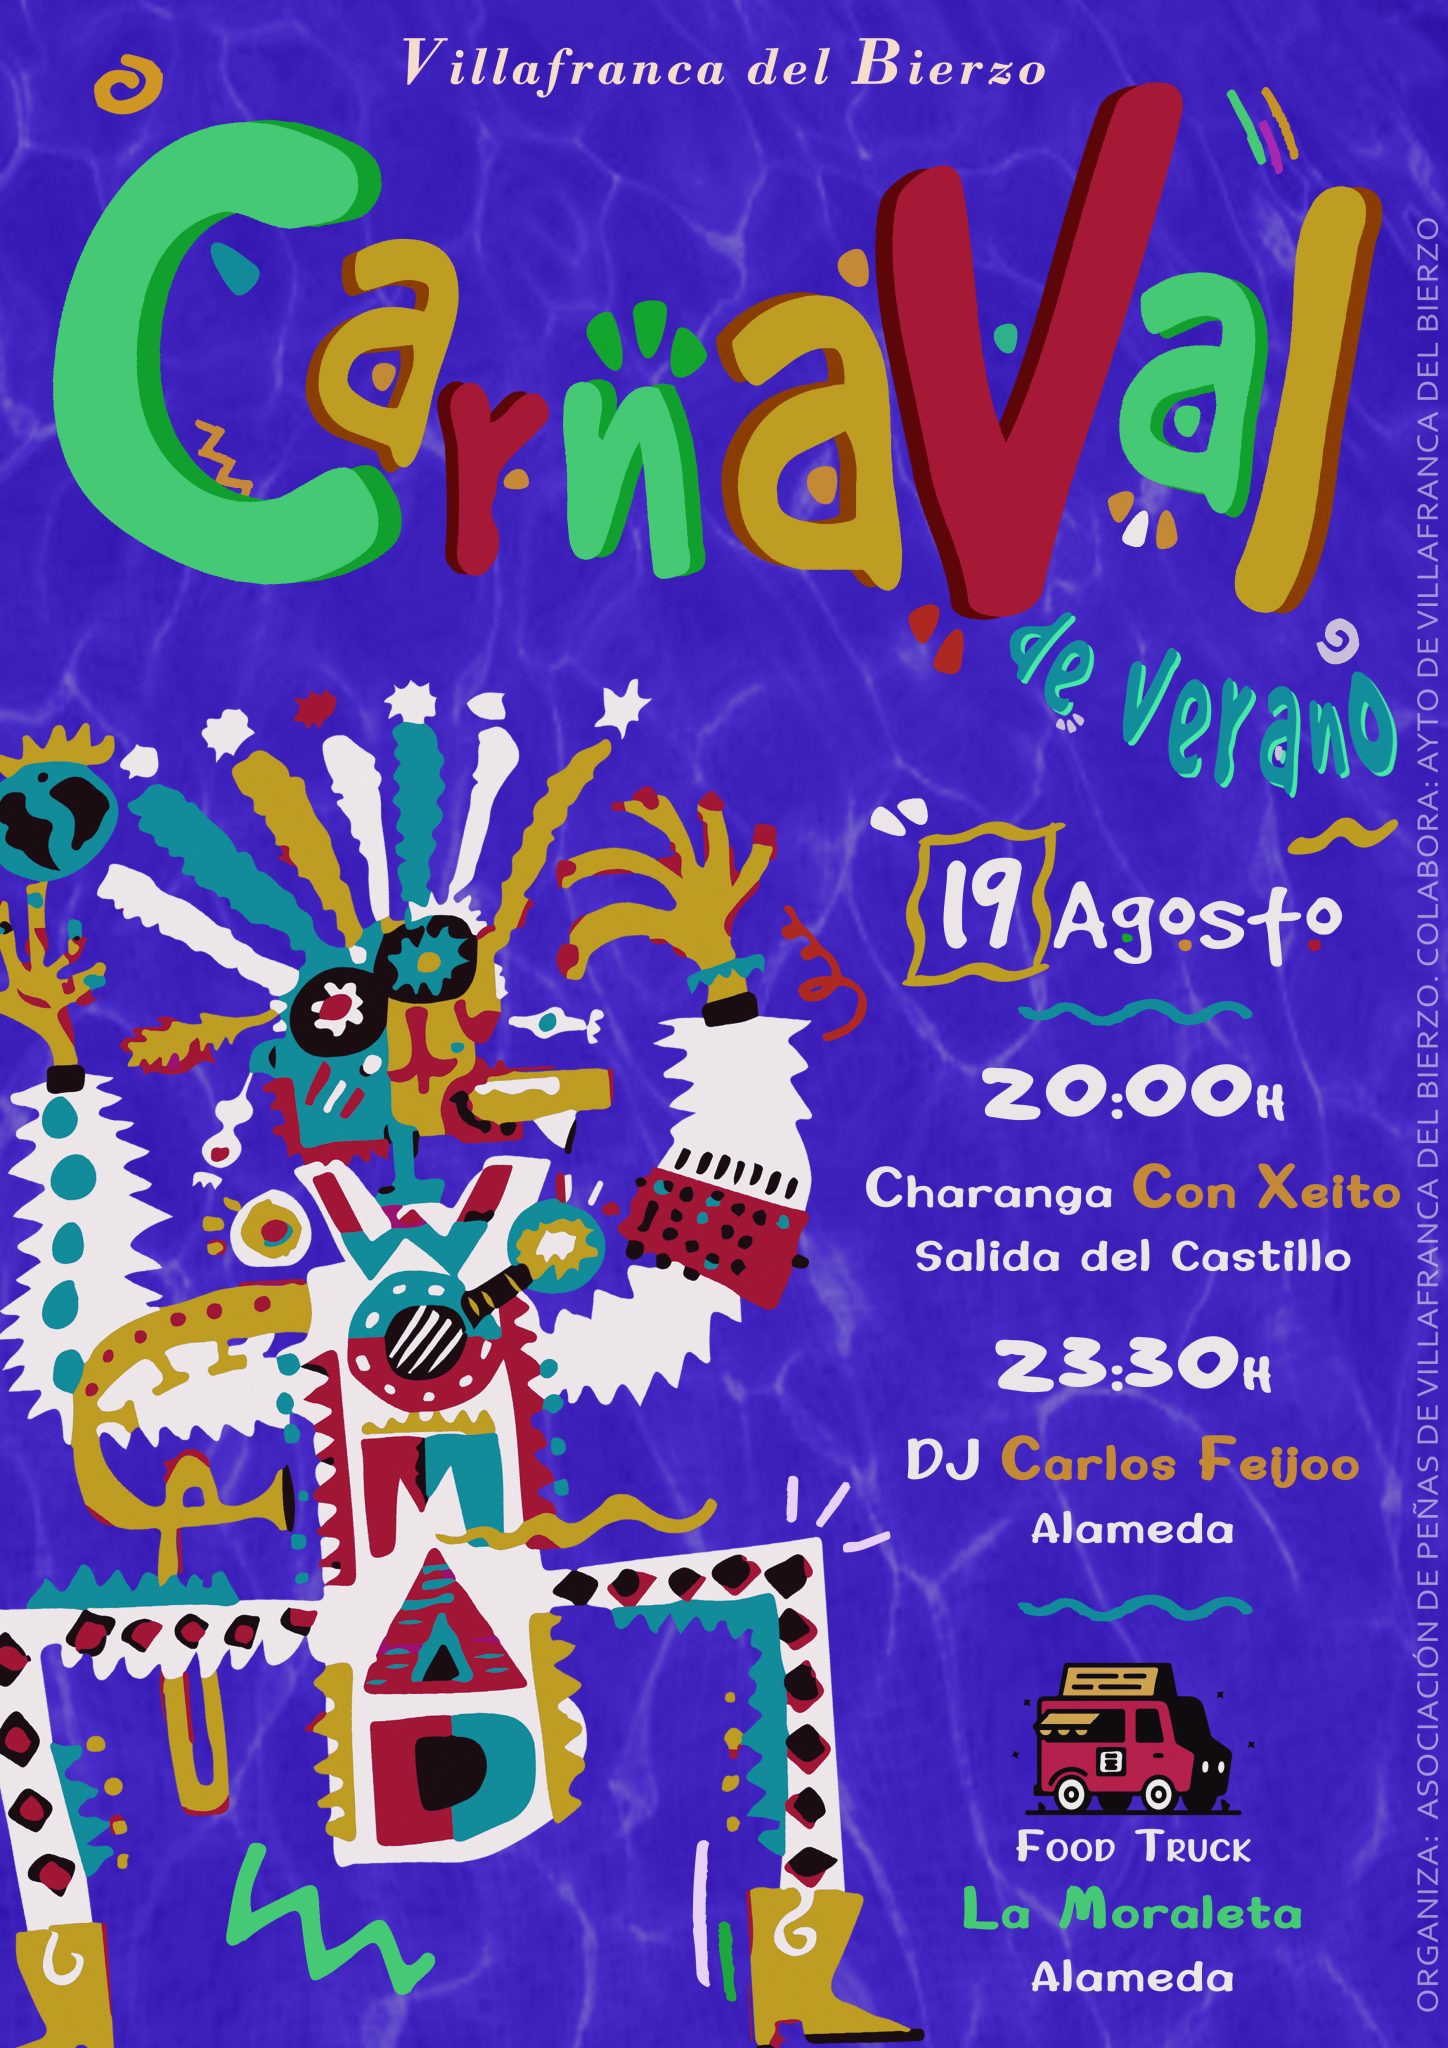 Villafranca celebrará su primer Carnaval de verano el próximo 19 de agosto 2